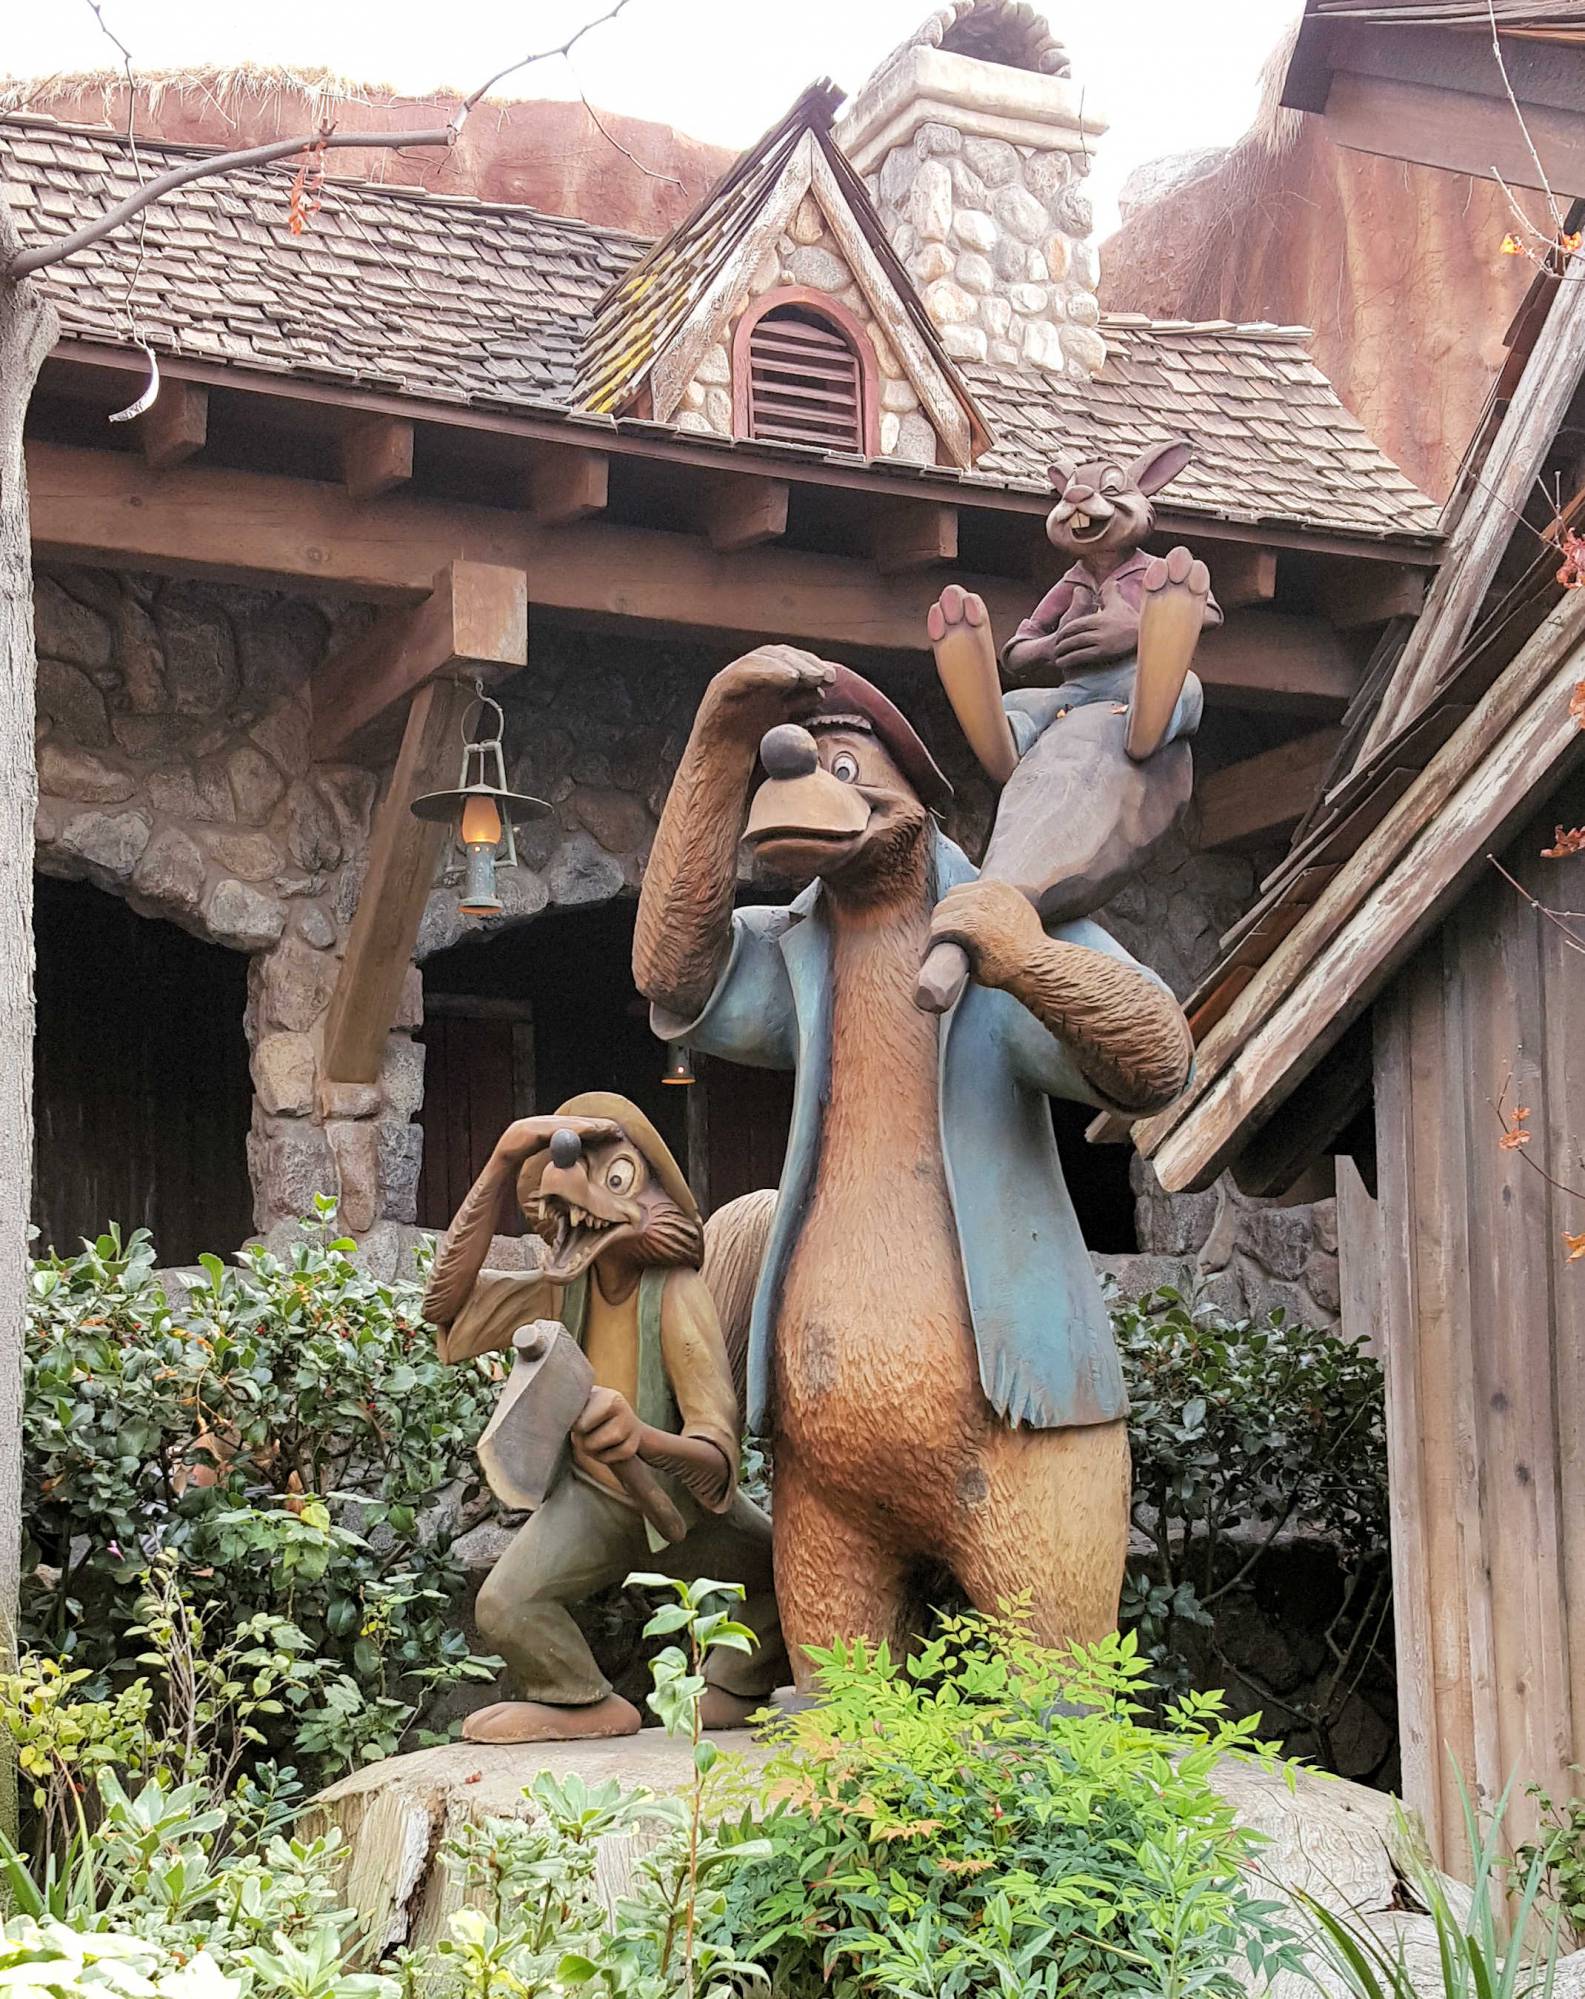 Disneyland brer statue outside Splash Mountain